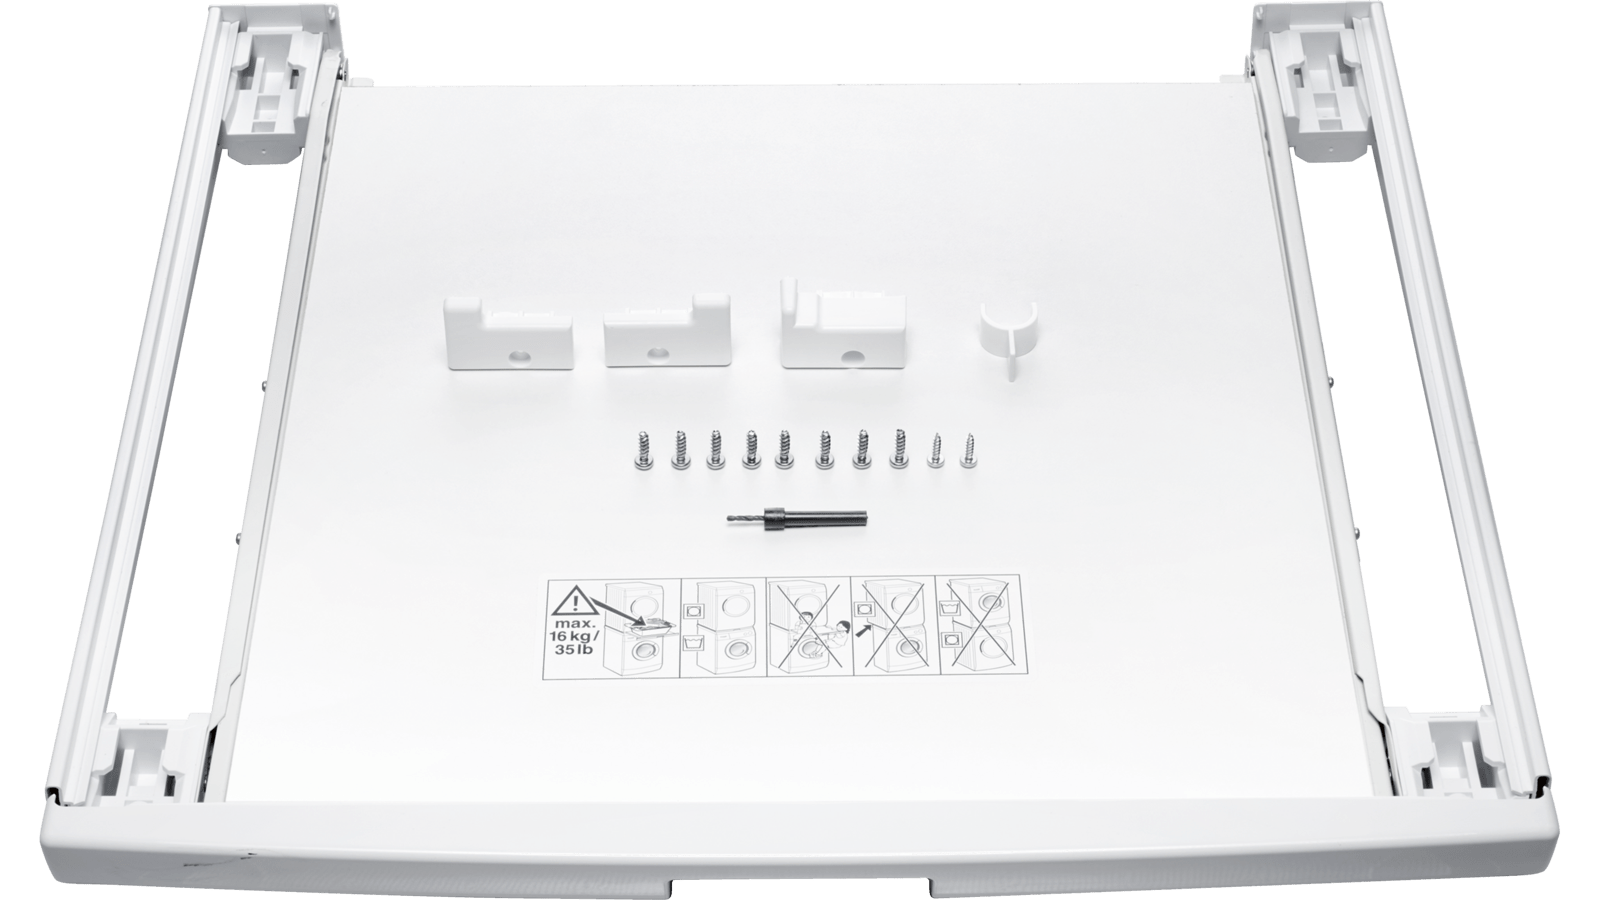 Kit de sujección Siemens WZ20300 Stacking kit 4 kg, Color blanco